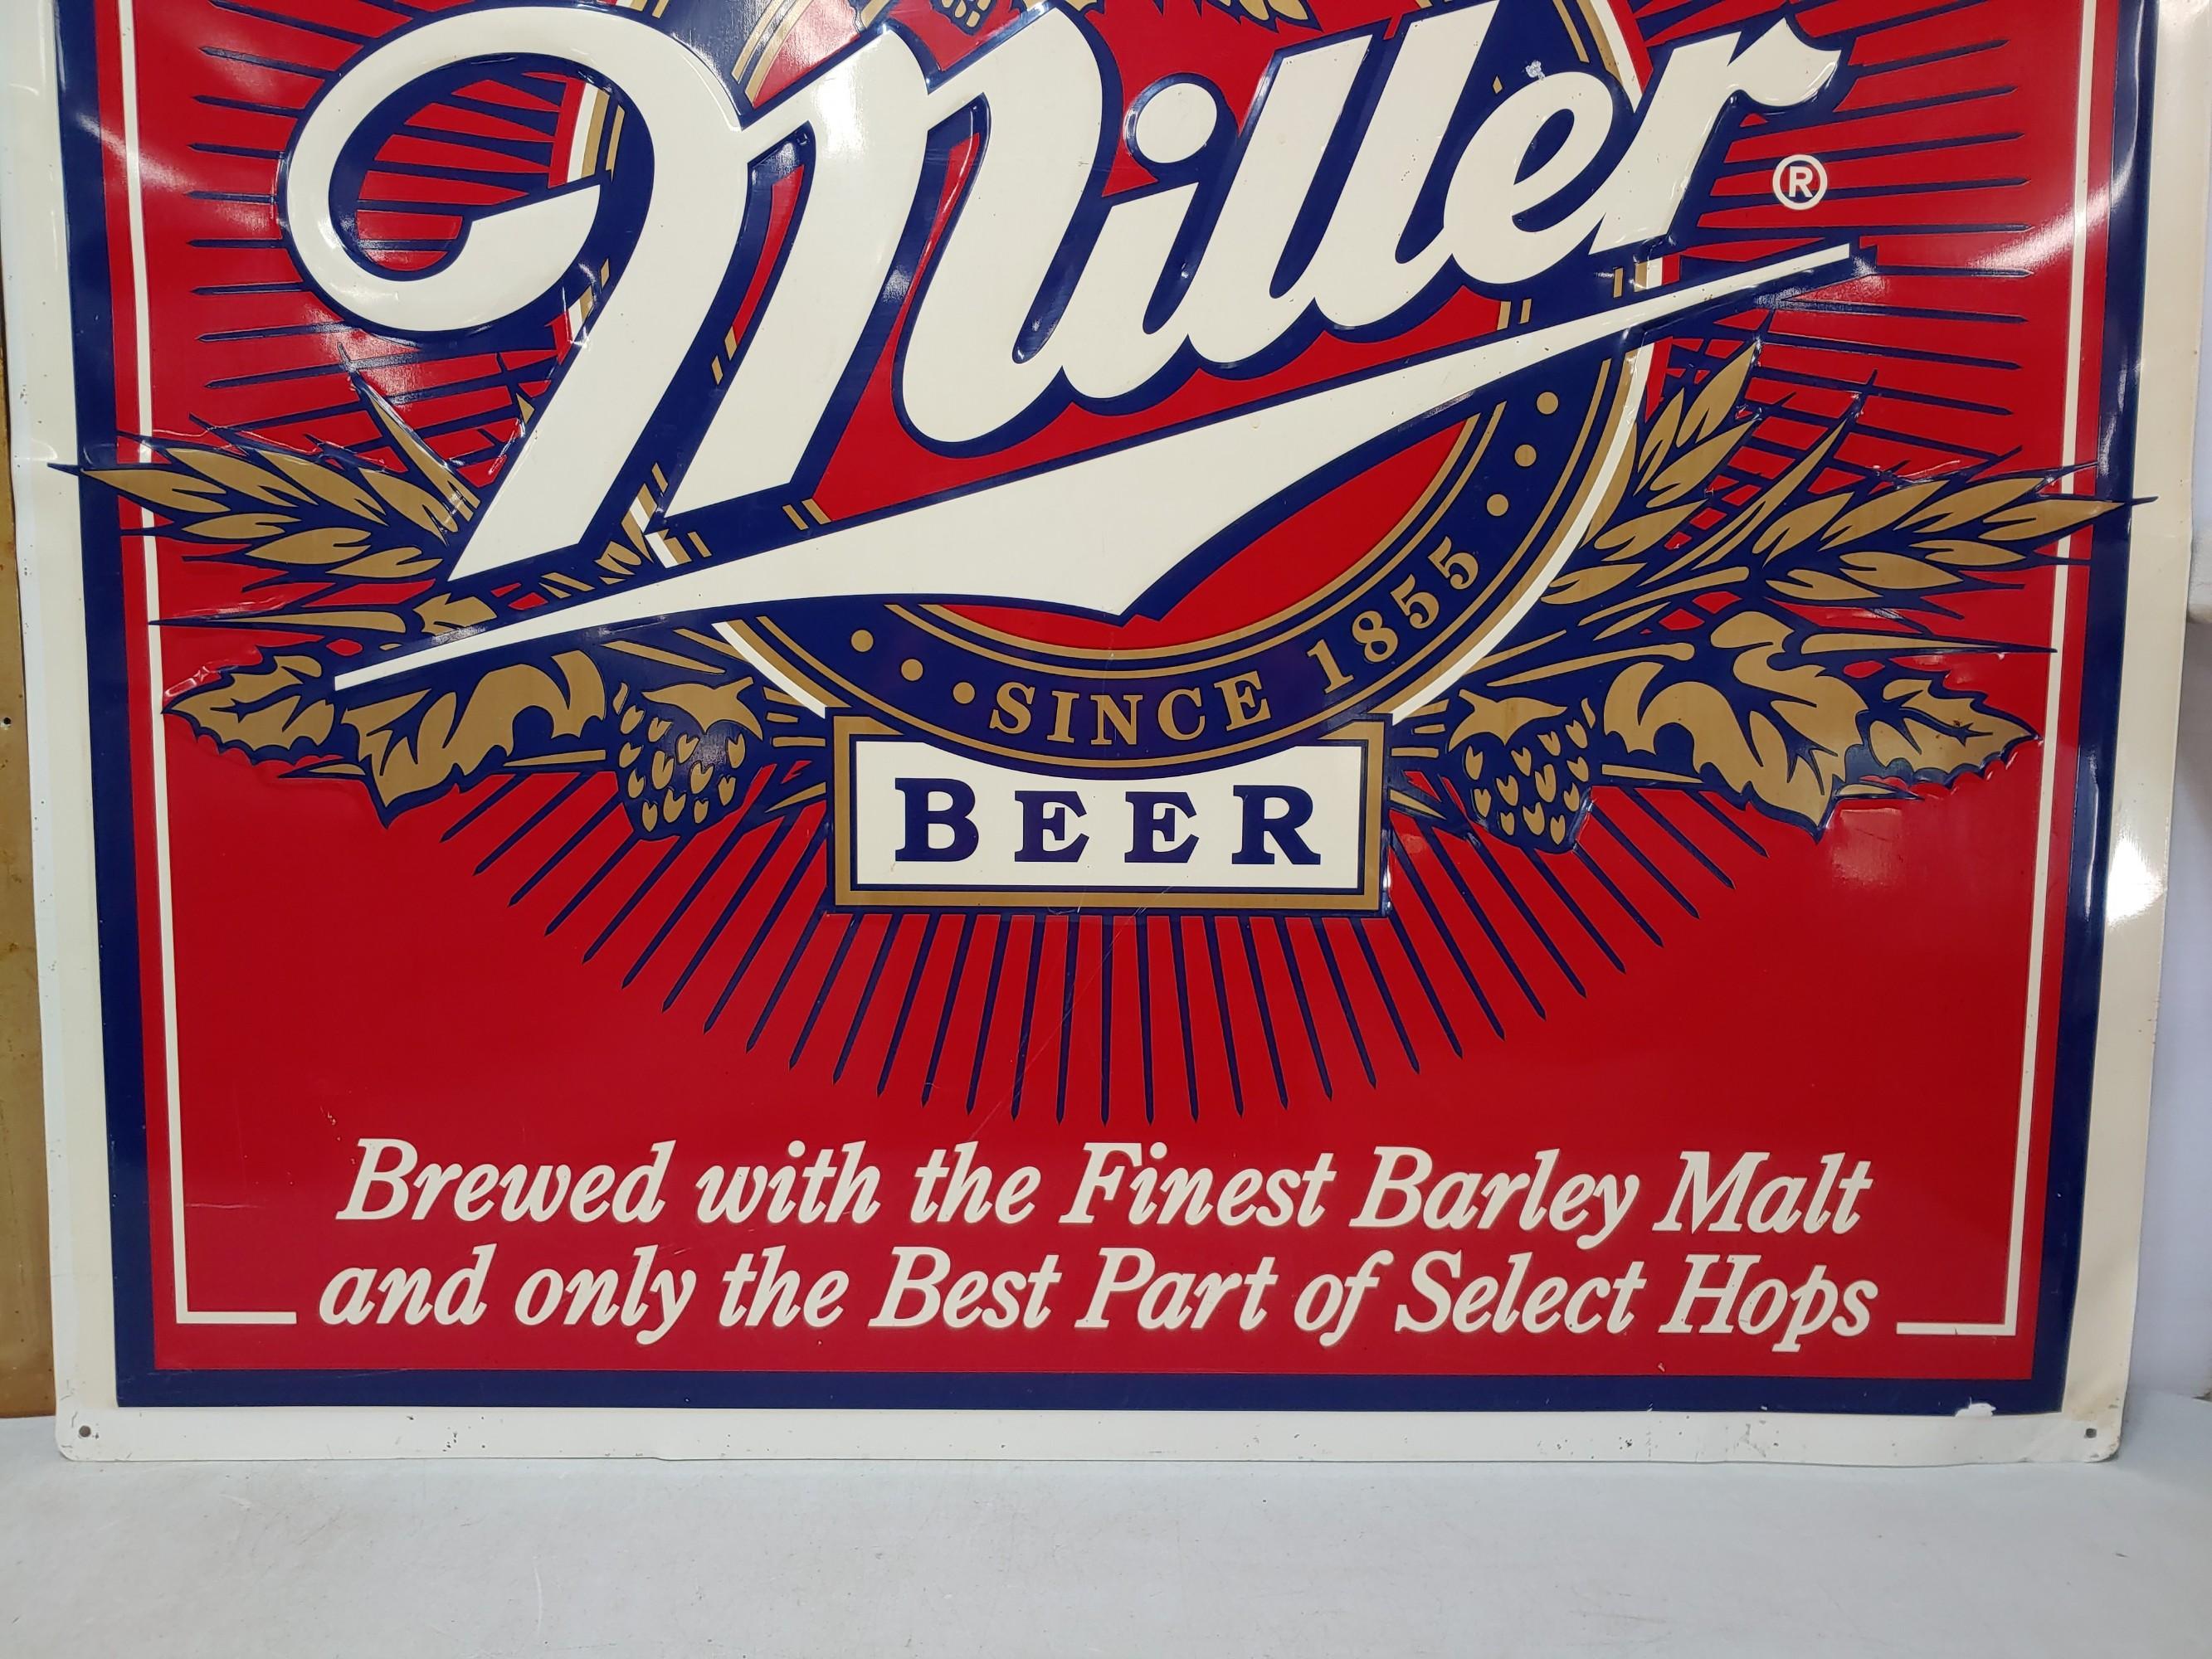 2x SST Miller Beer Embossed Signs